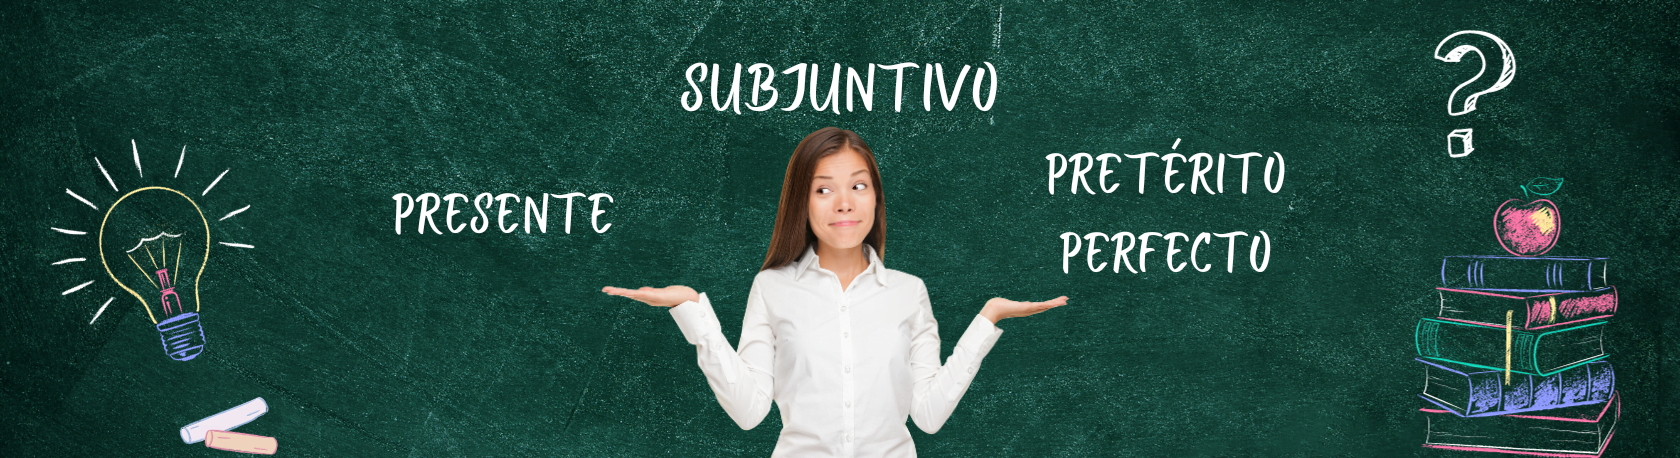 Polish up your Spanish Grammar & learn the differences between el presente y el pretérito perfecto del subjuntivo (Advanced) - Speak Spanish - Learn Spanish - Spanish Subjunctive - Easy Español